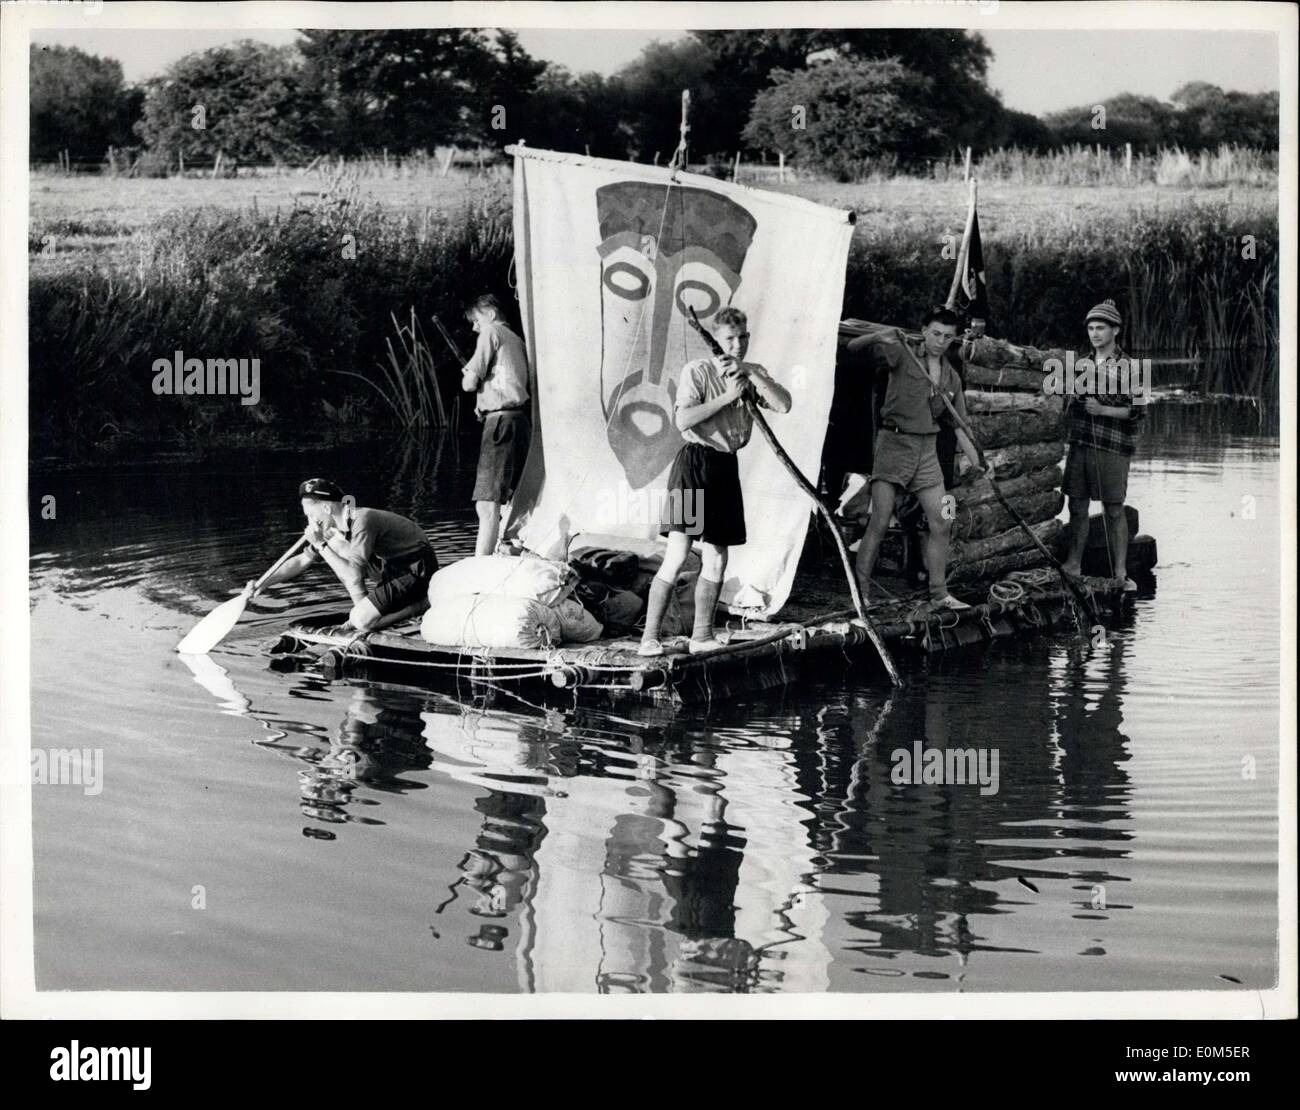 13. August 1953 - das Kon-TIki Boys kommt Kreuzfahrt auf der Themse.: Old Man River bekommt eine Adventuruos Crew. Fünf Bristol Boy Scouts auf ihre hausgemachten Nachbildung des berühmten Kon-Tiki-Floß schweben auf Ölfässern auf der Themse. Sie begannen von Lechlade, Gloucestershire, am Sonntag. Aber es ist harte Arbeit poling - sie brauchten drei Tage, 16 Meilen zurückzulegen. Sie hoffen, Oxford Morgen erreichen. Sie sind hier zu sehen bei Shifford Lock, Oxfordshire. Die Reise, einschließlich das Floß und deren Transport zum Fluss Kosten? 3 2 s, einen Kopf. Stockfoto